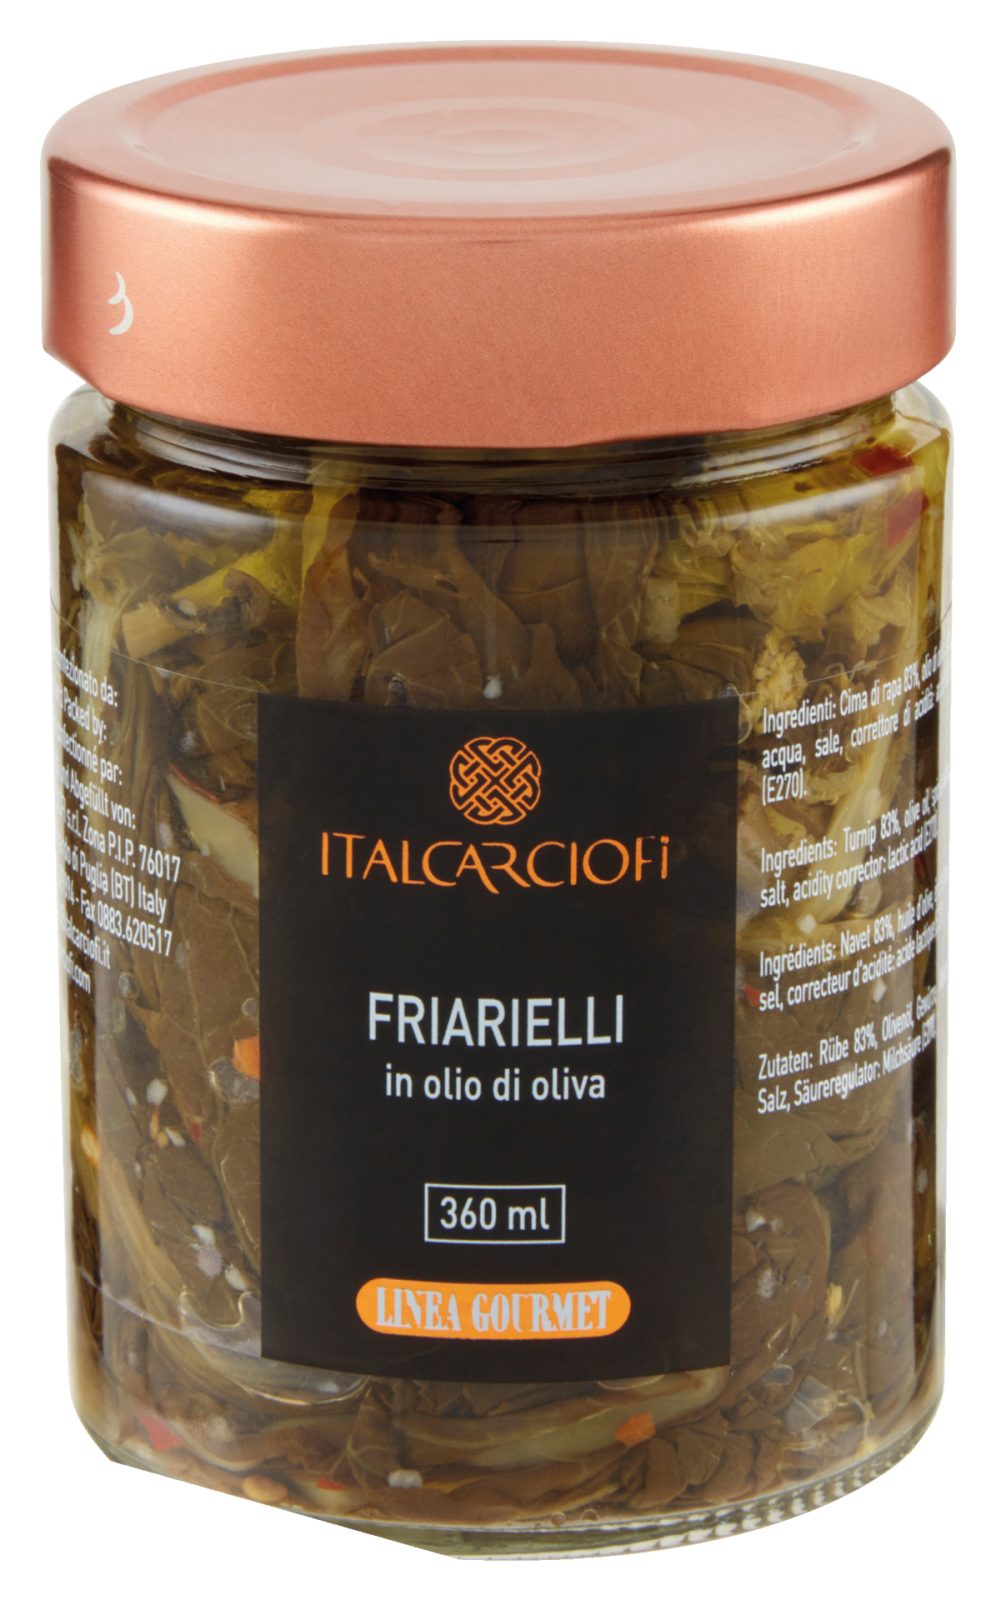 Friarielli in olio di oliva